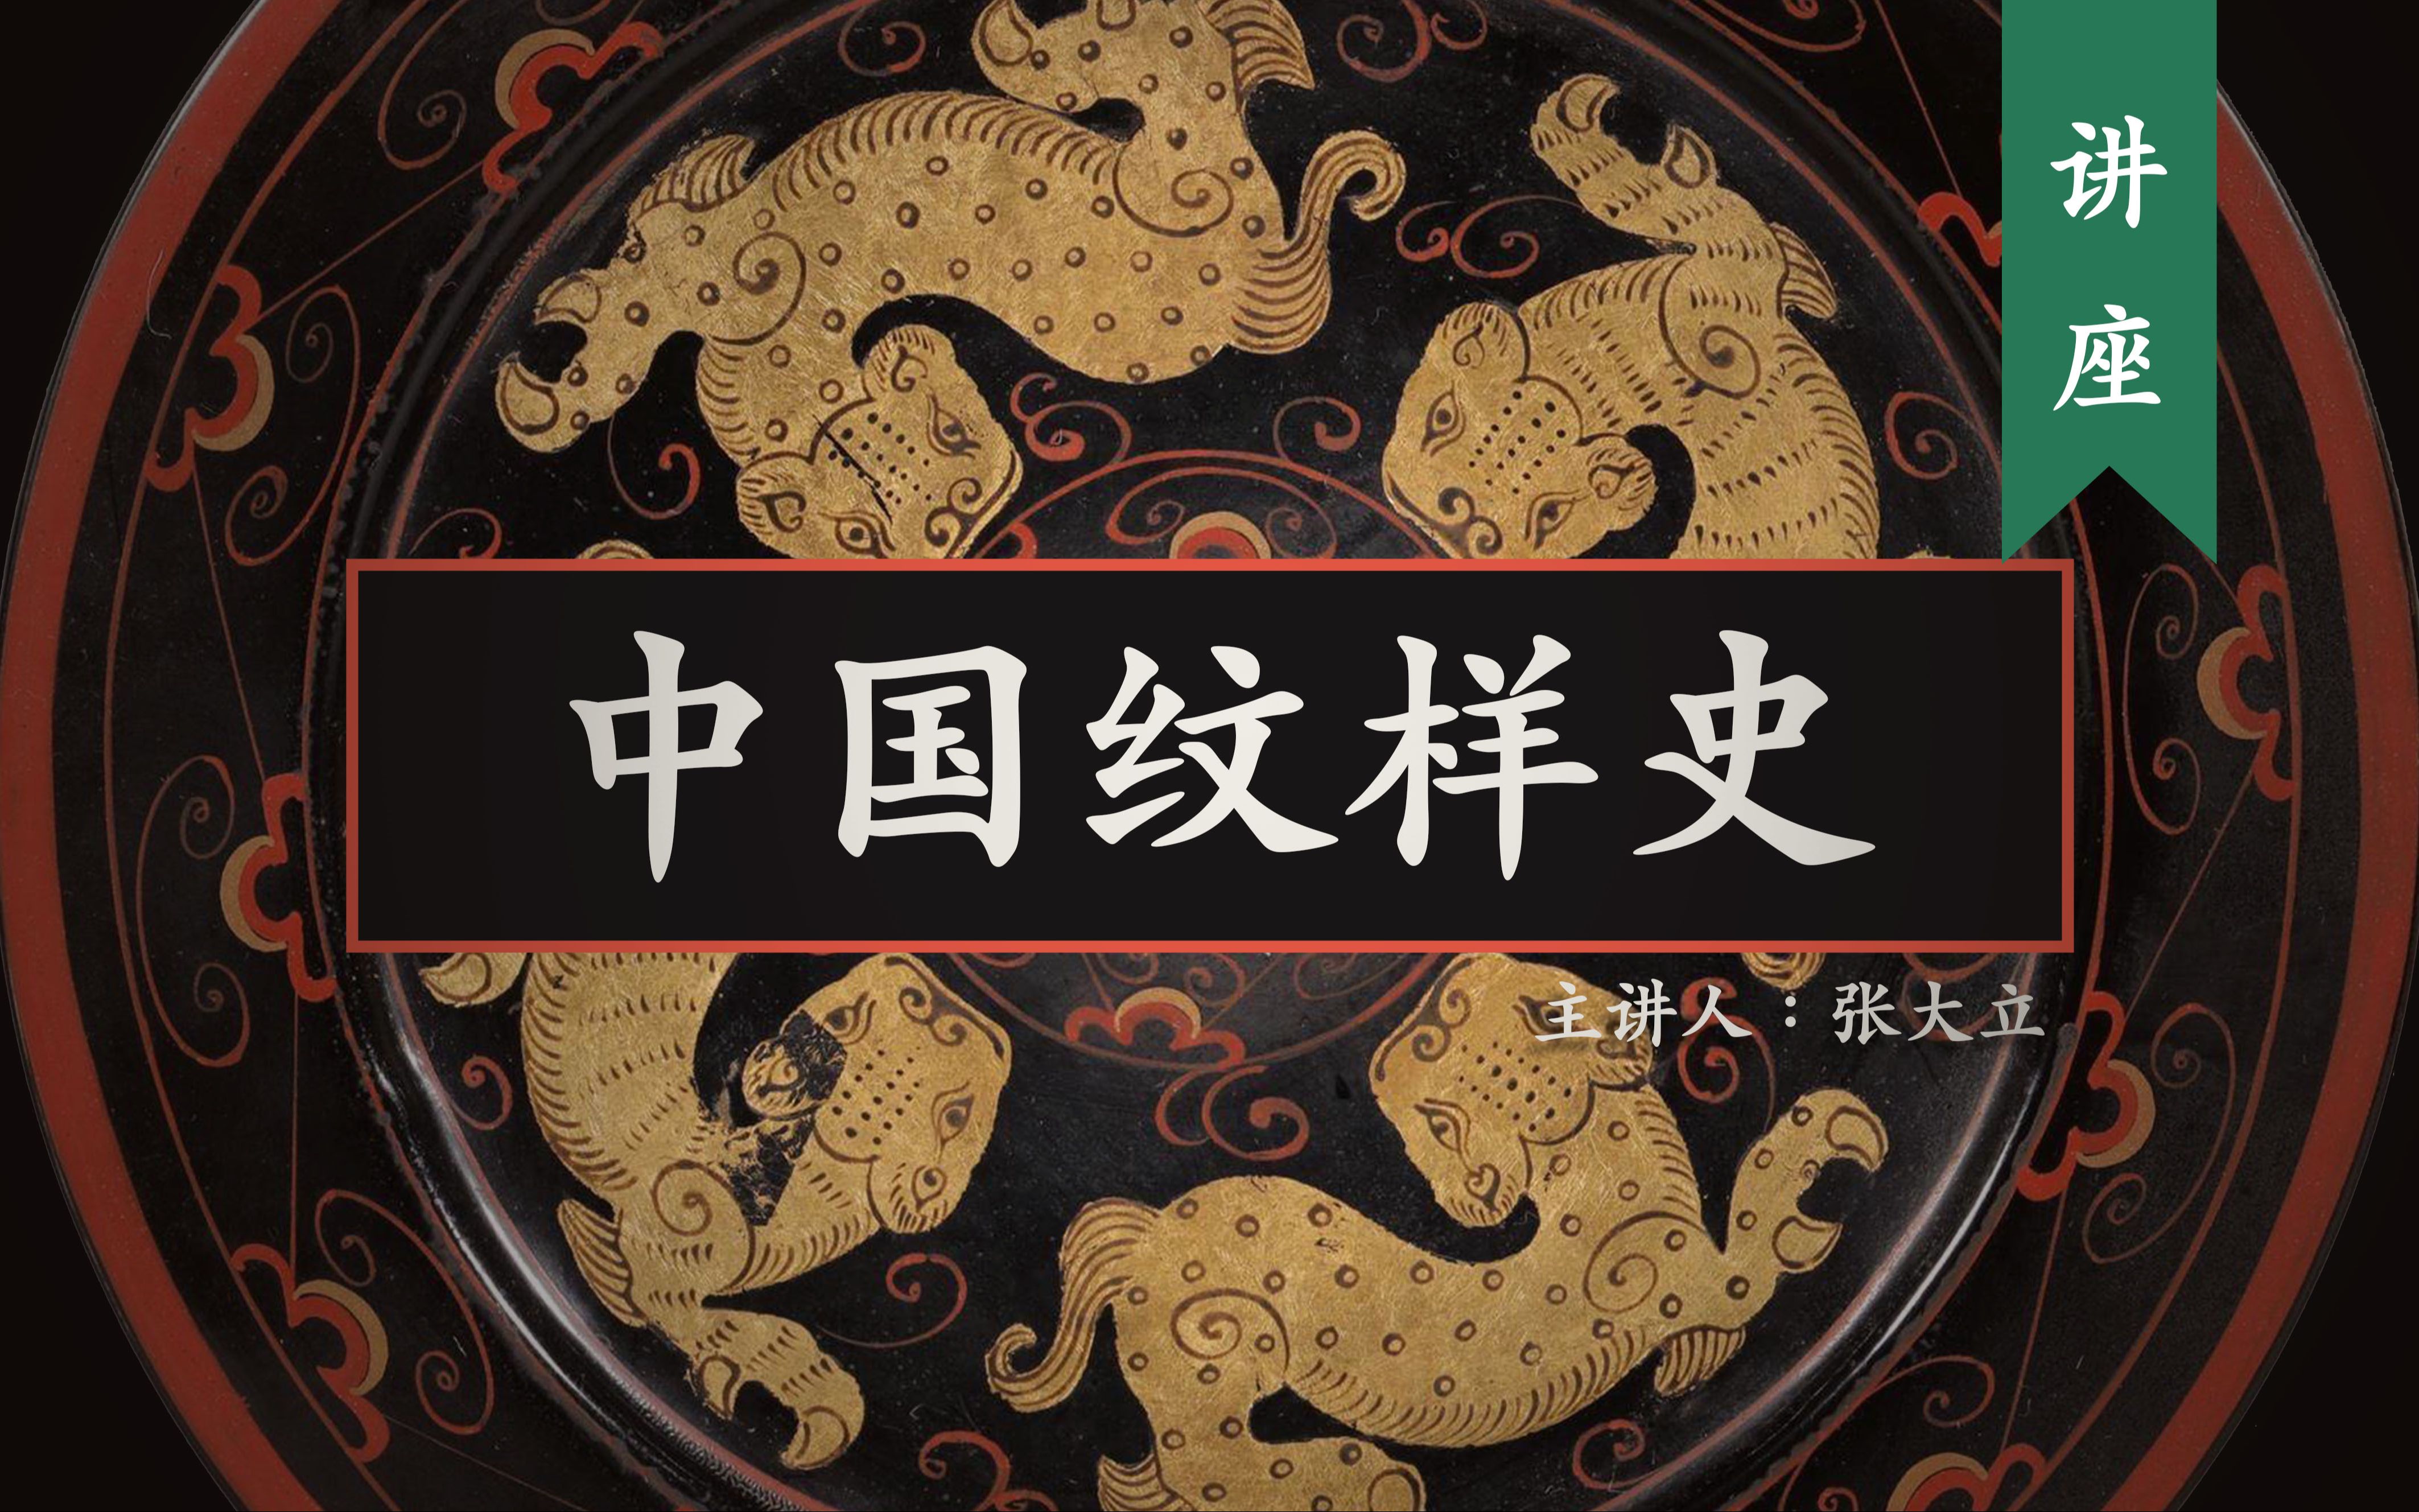 讲解 5000 年中国纹样发展史 主讲师：张大立   建议收藏反复观看